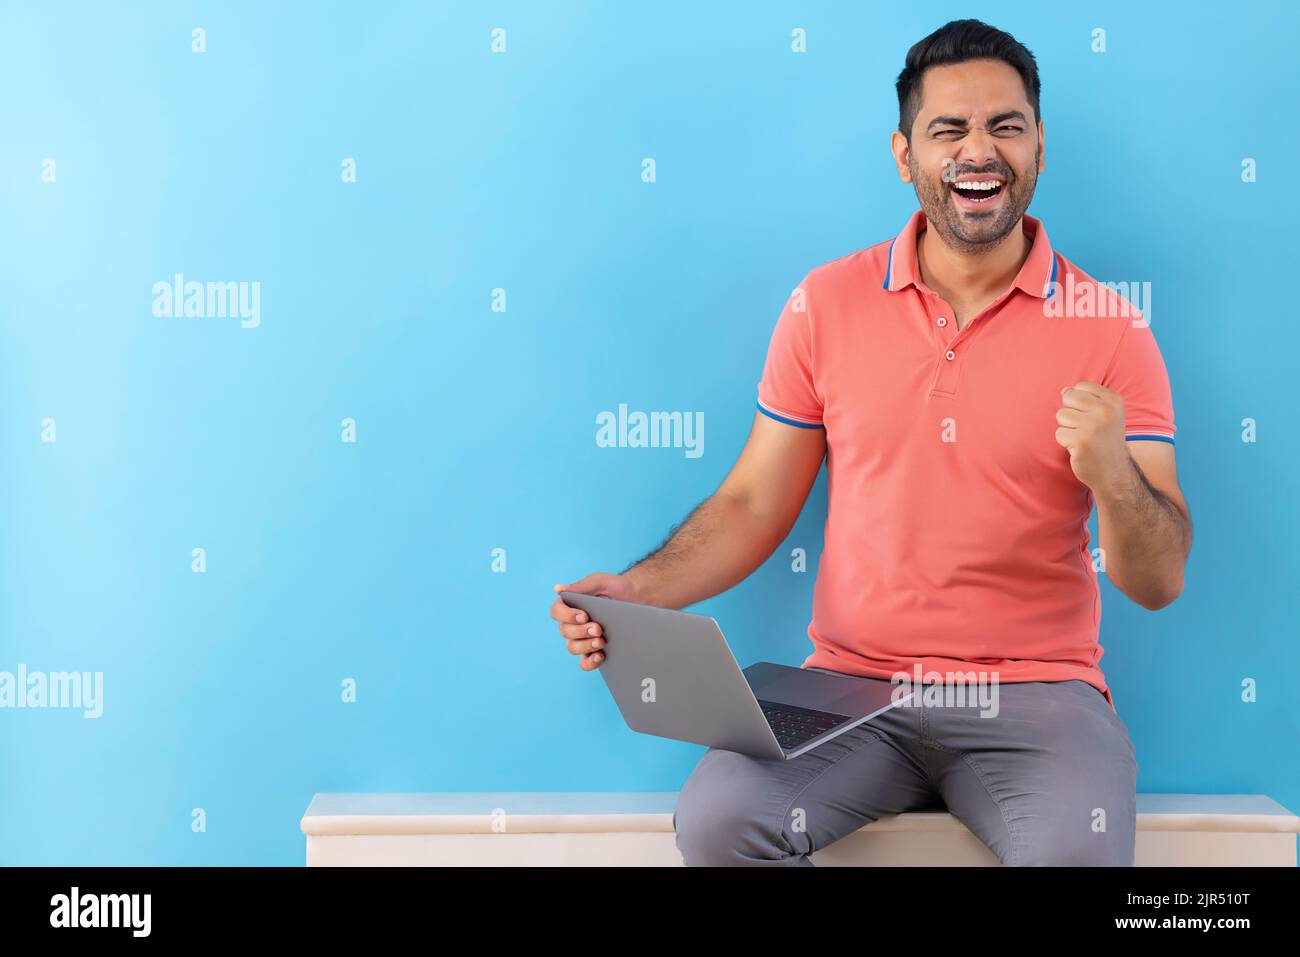 Un jeune homme heureux qui applaudisse en levant le poing tout en utilisant un ordinateur portable Banque D'Images